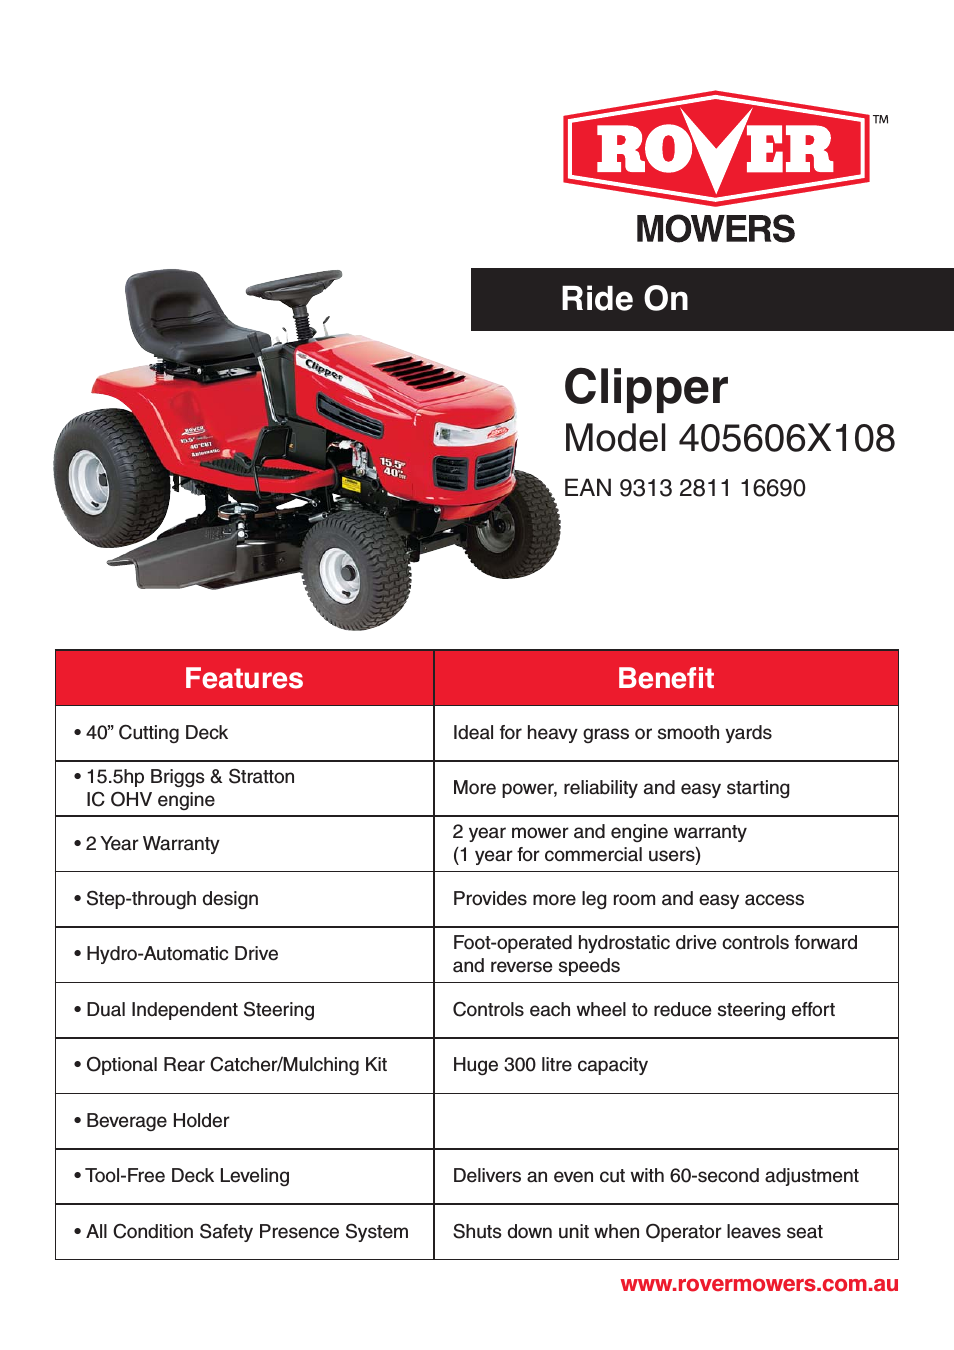 Clipper 405606X108